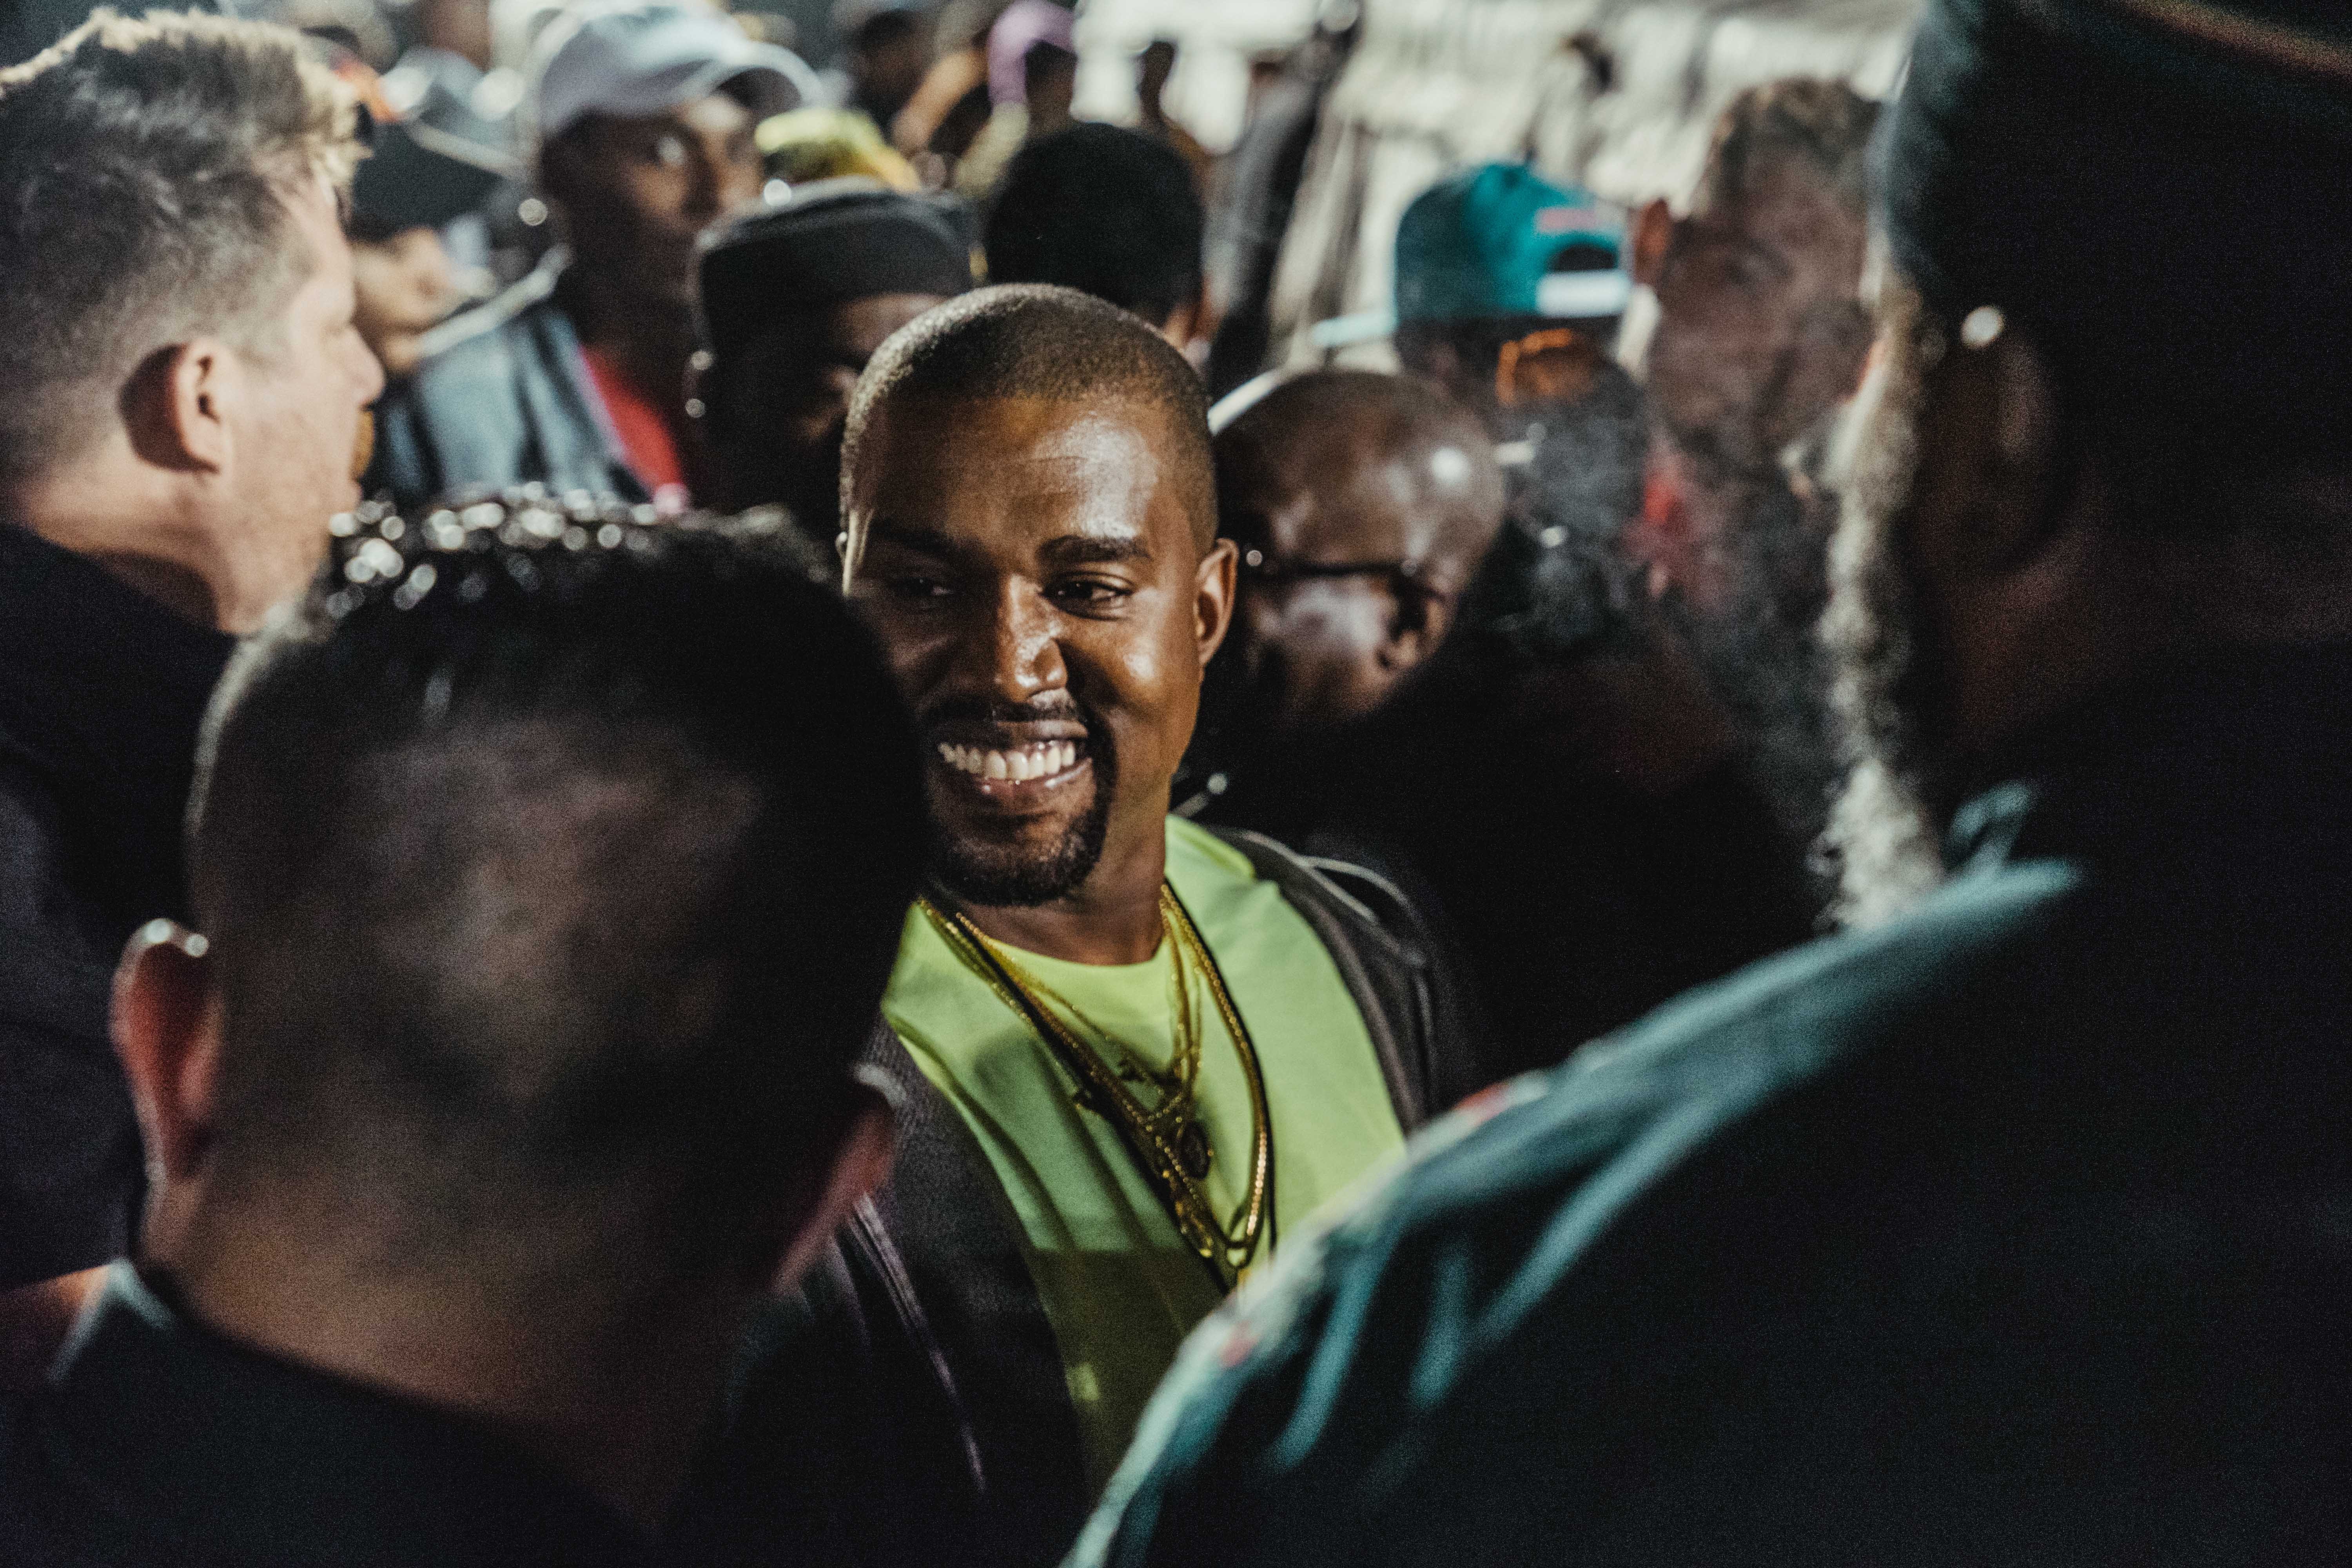 Kanye West がプロデュースした Nas の新アルバム『Nasir』のリスニングパーティーの様子をレポート 名盤入りが確実視される一枚に豪華セレブリティたちが酔いしれ、軍事施設のようなクイーンズの会場は大盛り上がり 説明不要の大物ラッパー Nas（ナズ）は遂に、Kanye West（カニエ・ウェスト）プロデュースの最新アルバム『Nasir』をリリース。そして、この全世界待望のリリースを記念して、Nasの地元であるニューヨーク・クイーンズに架かるクイーンズボロ橋の下でリスニングパーティーが開催された。  会場にはカモフラ柄を纏ったトラックが複数台駐車され、その脇にはテントも張られるなど、まるで戦場の軍事施設のような装いに。そこにはPusha T（プシャ・T）、2 Chainz（2チェインズ）、Chris Rock（クリス・ロック）、Big Boi（ビッグ・ボーイ）、Kim Kardashian（キム・カーダシアン）、LaLa Anthony（ララ・アンソニー）、Casey Neistat（ケイシー・ネイスタット）、Nasの実の弟Jungle（ジャングル）、AZ、Large Professor（ラージ・プロフェッサー）など、豪華セレブリティたちが祝福に駆けつけ、“Not For Radio”から幕を開ける最新アルバムに酔いしれた。その盛り上がり方は想像以上のもので、KanyeやNasもサークル内に埋もれ、Kimは軍用車両の上に登るほど。  『Nasir』はすでに日本でも配信がスタートしているので、試聴がお済みでない方は今すぐダウンロードをしてしまおう。  また、会場内で散見された『Nasir』のマーチコレクションの全貌もお見逃しなく。